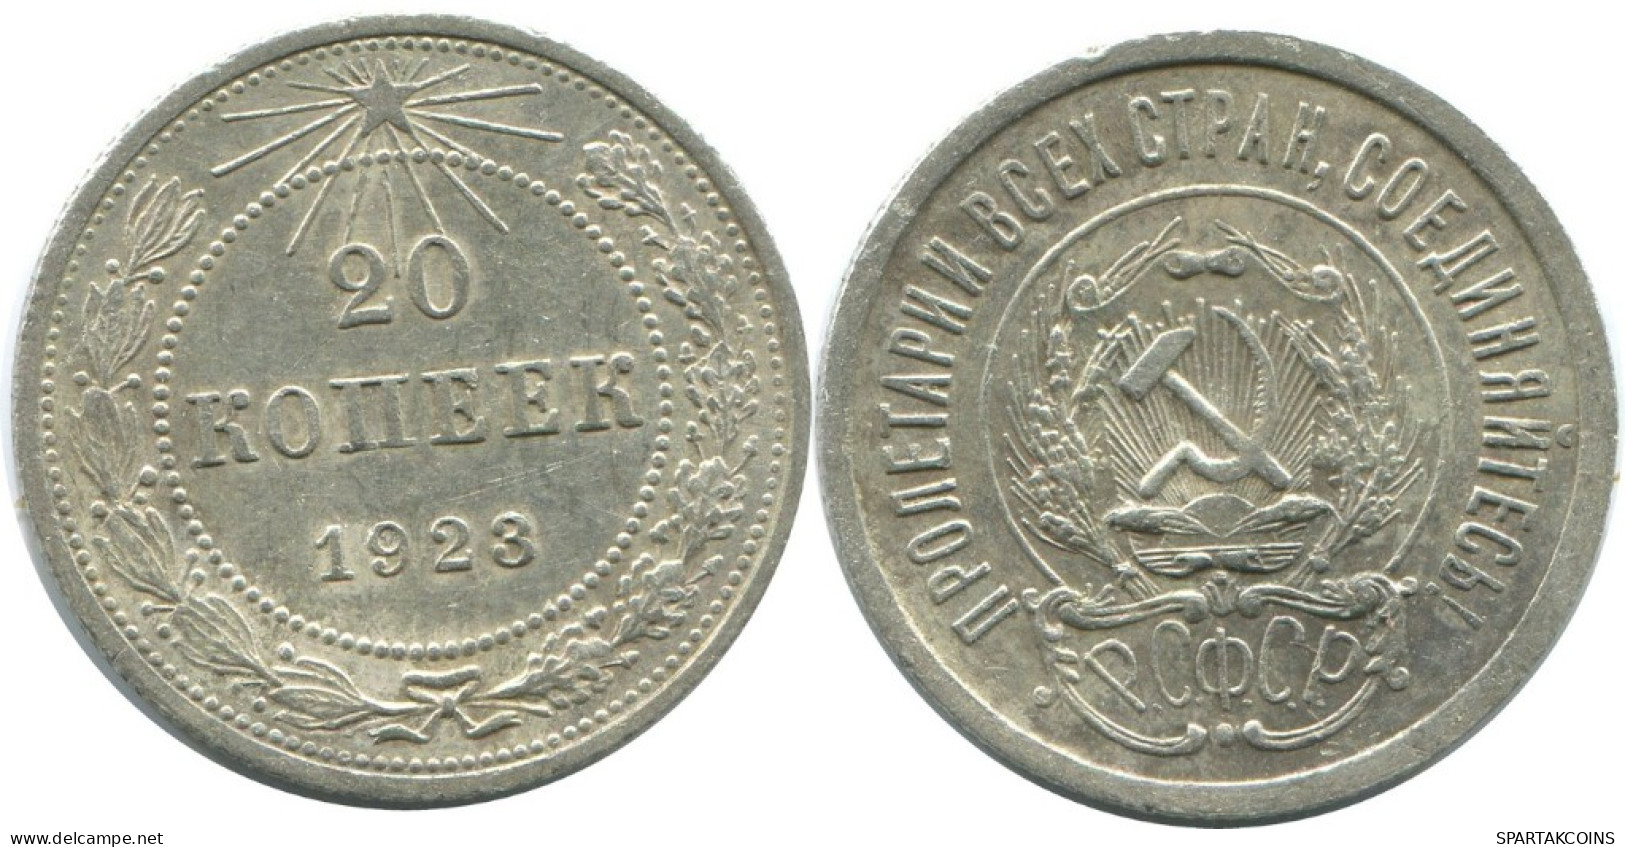 20 KOPEKS 1923 RUSSLAND RUSSIA RSFSR SILBER Münze HIGH GRADE #AF569.4.D.A - Russia